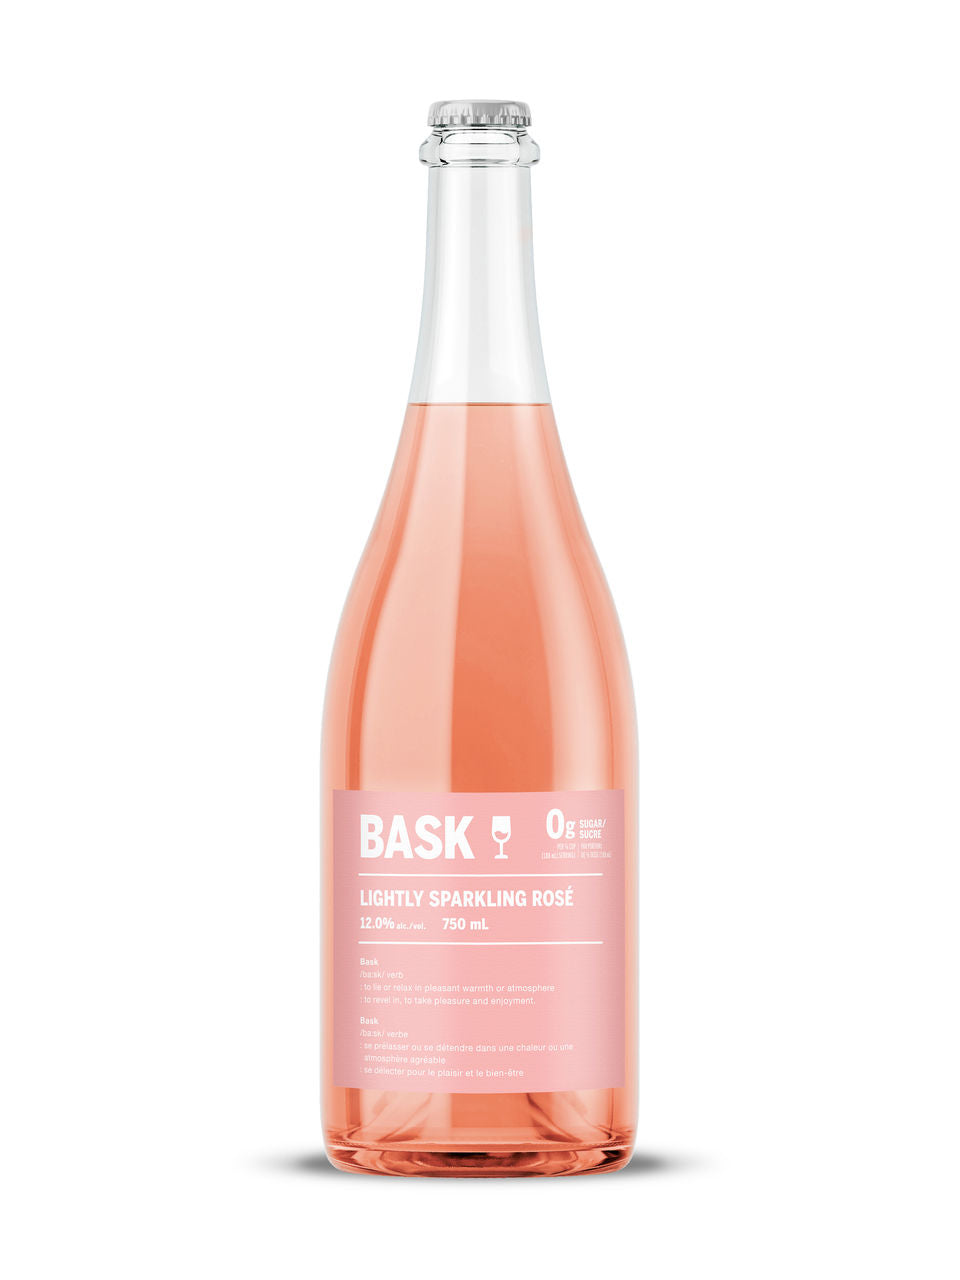 Bask Lightly Sparkling Rosé 750 ml bottle